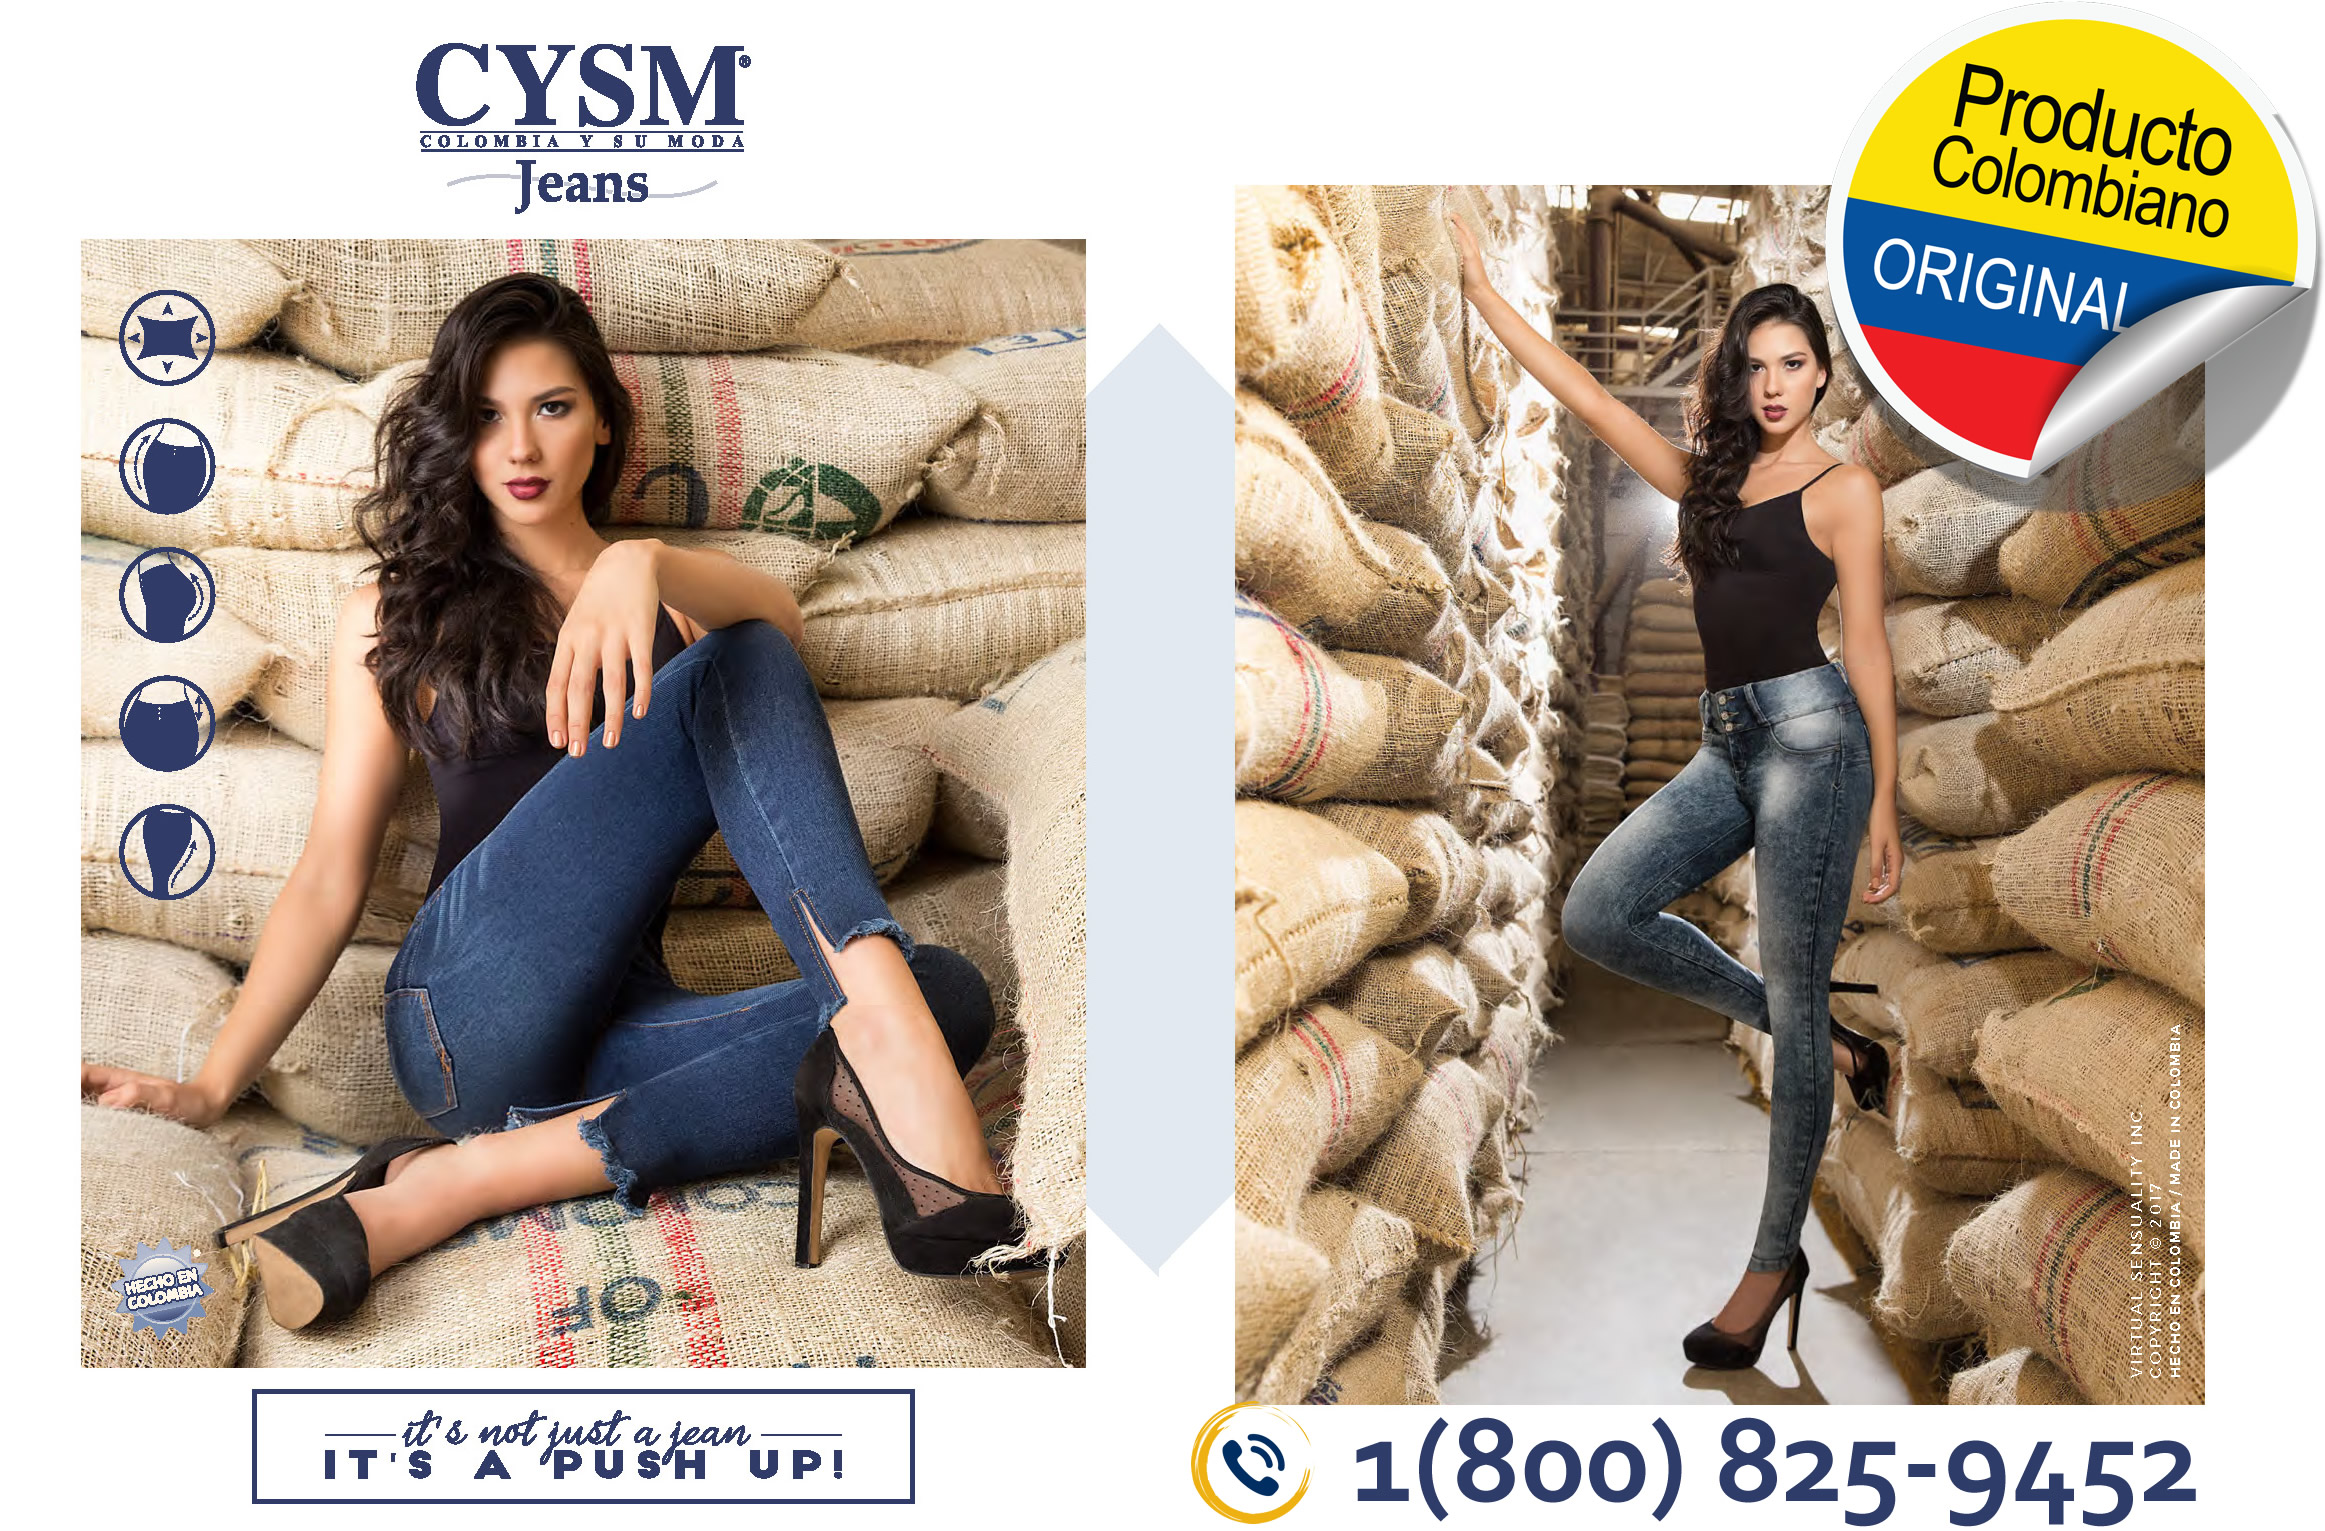 Jeans Push Up Wholesale | Julio 2017 | CYSM